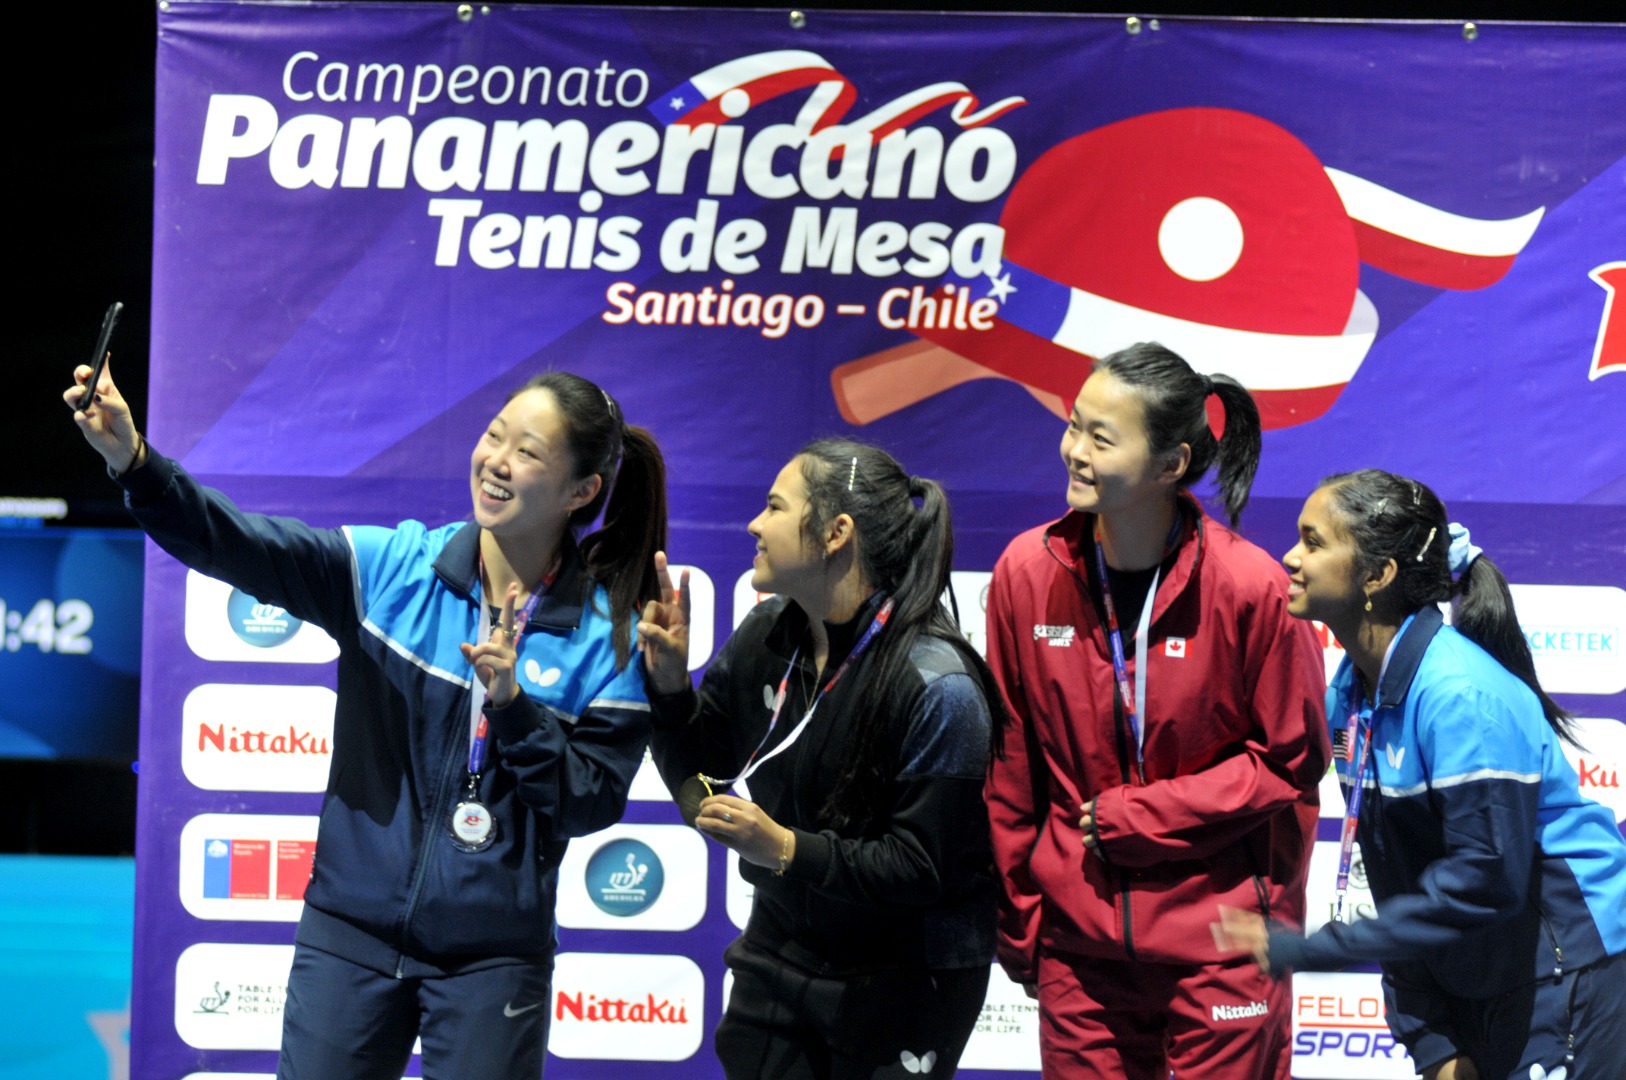 Ganadoras equipo tenis de mesa en Panamericano 2022